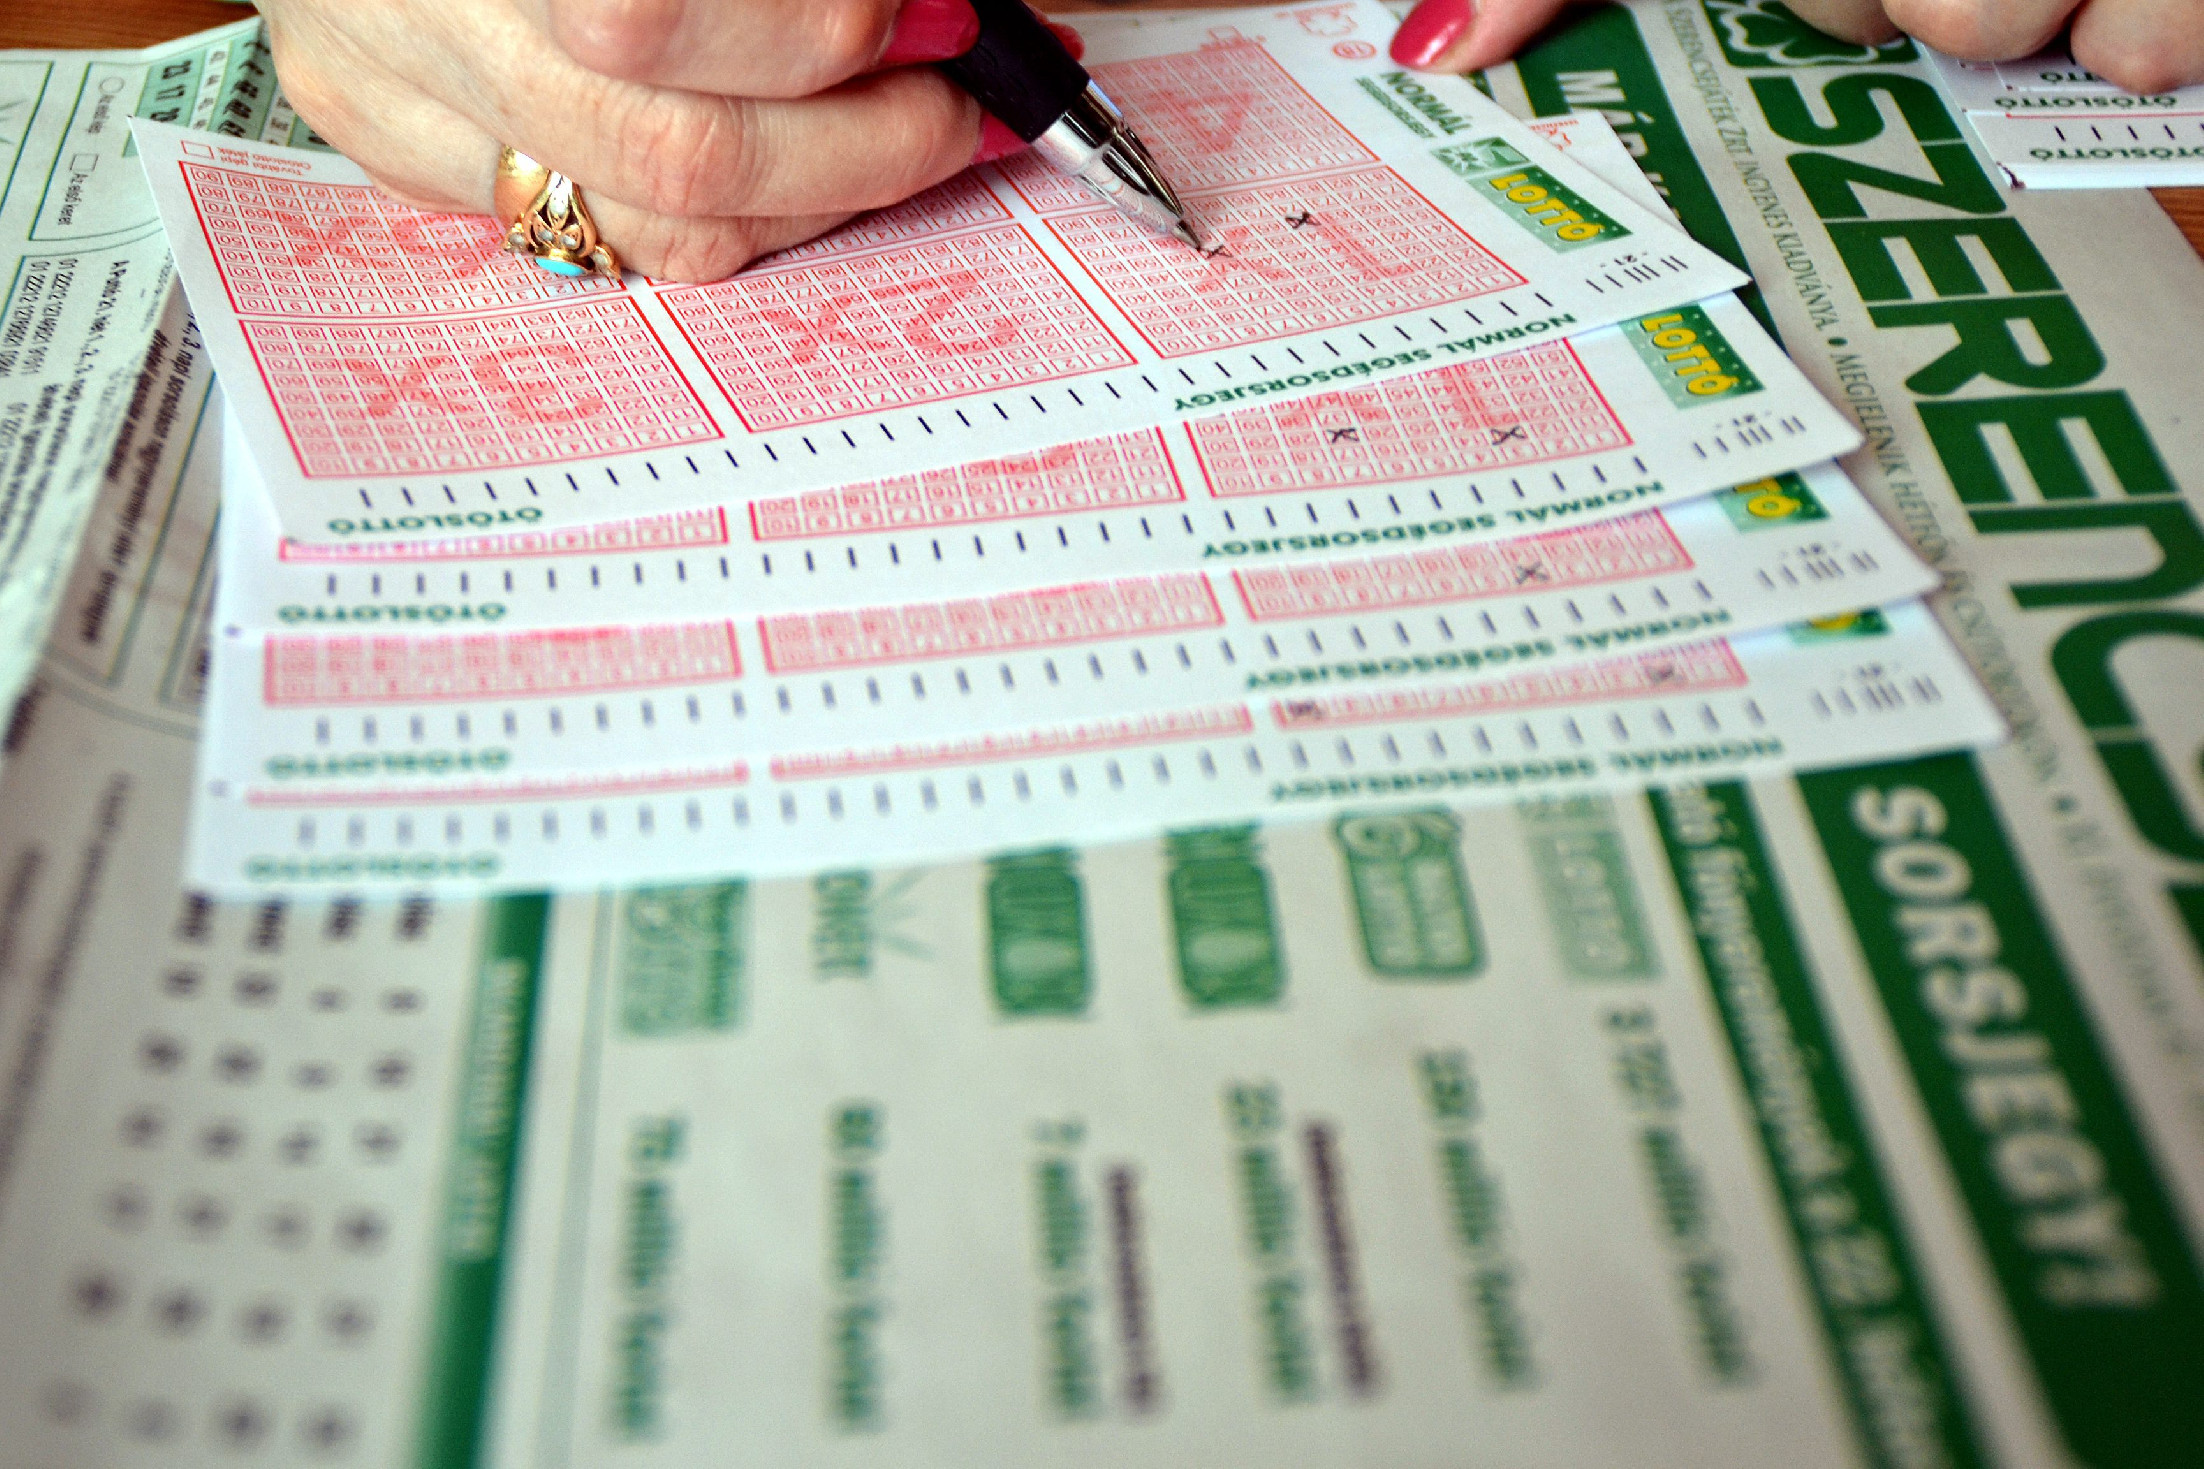 Változnak a lottózás szabályai – jelentette be a Szerencsejáték Zrt